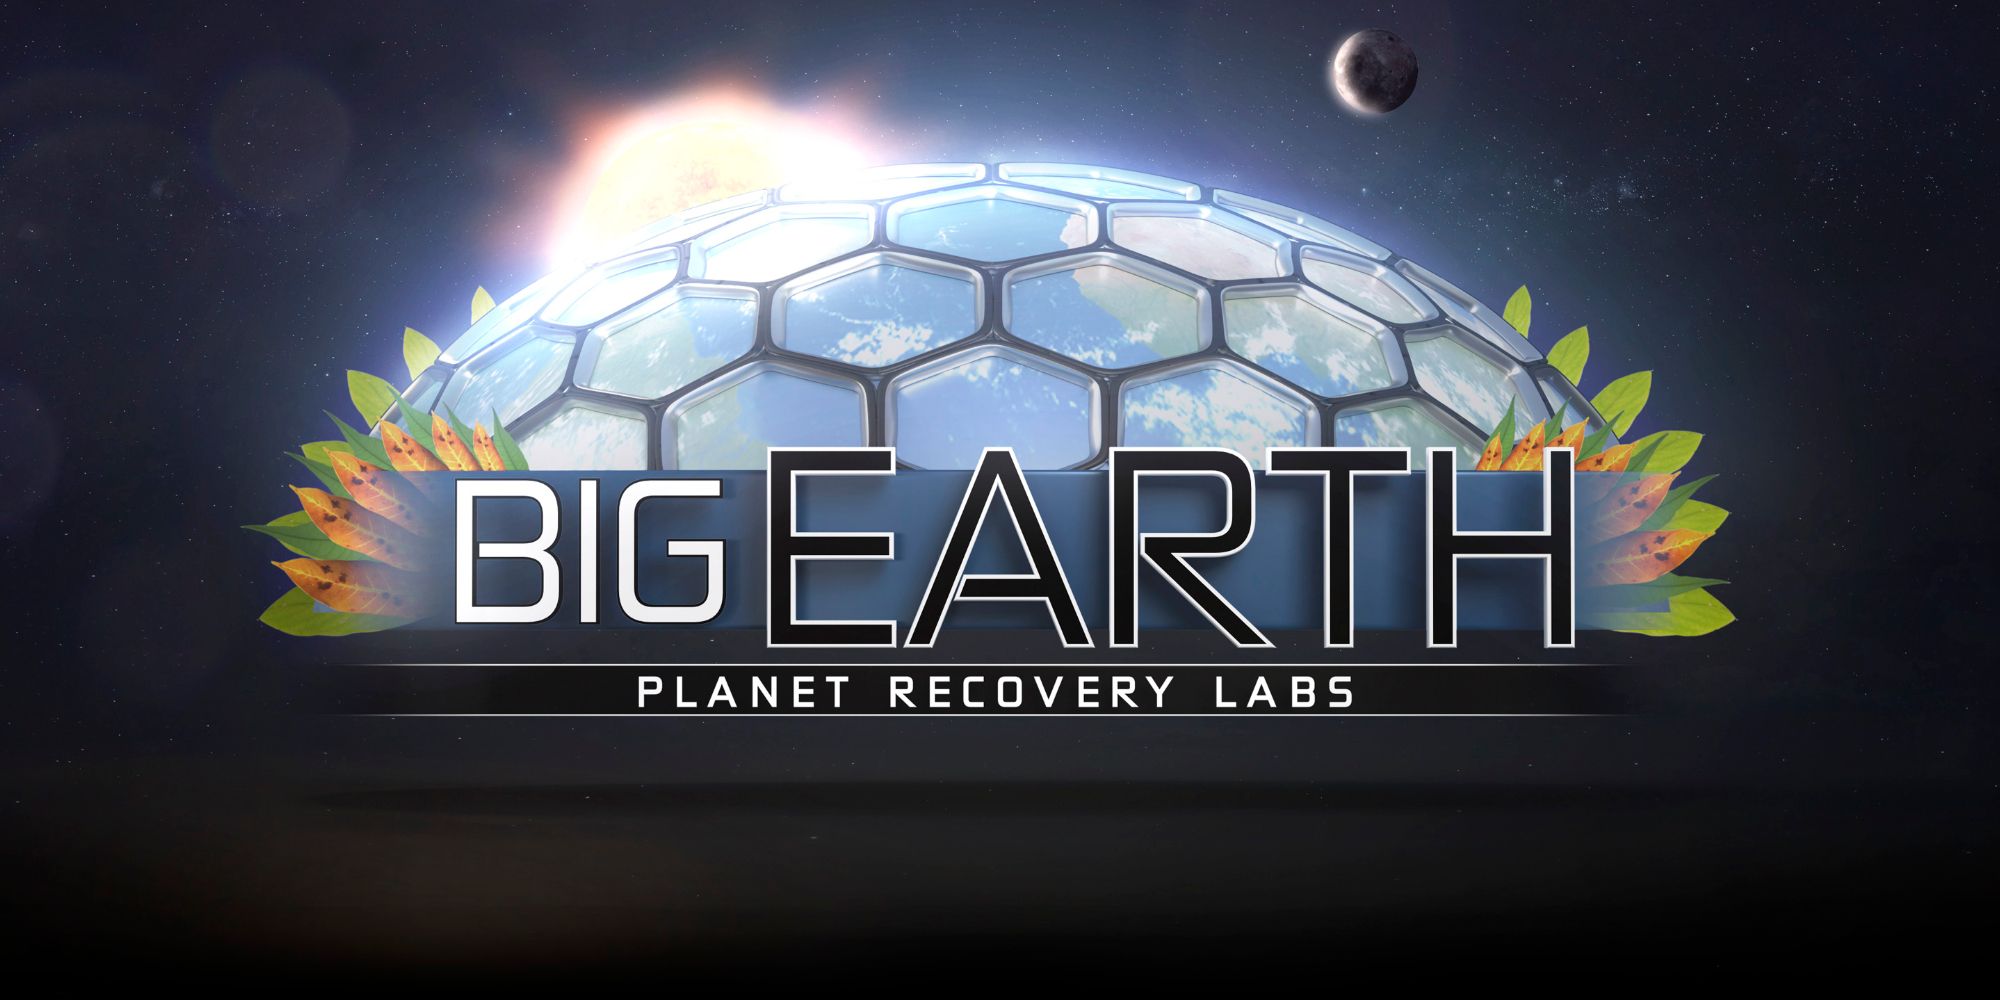 Revisión de Big Earth: impresionantes imágenes enturbiadas por una mala jugabilidad